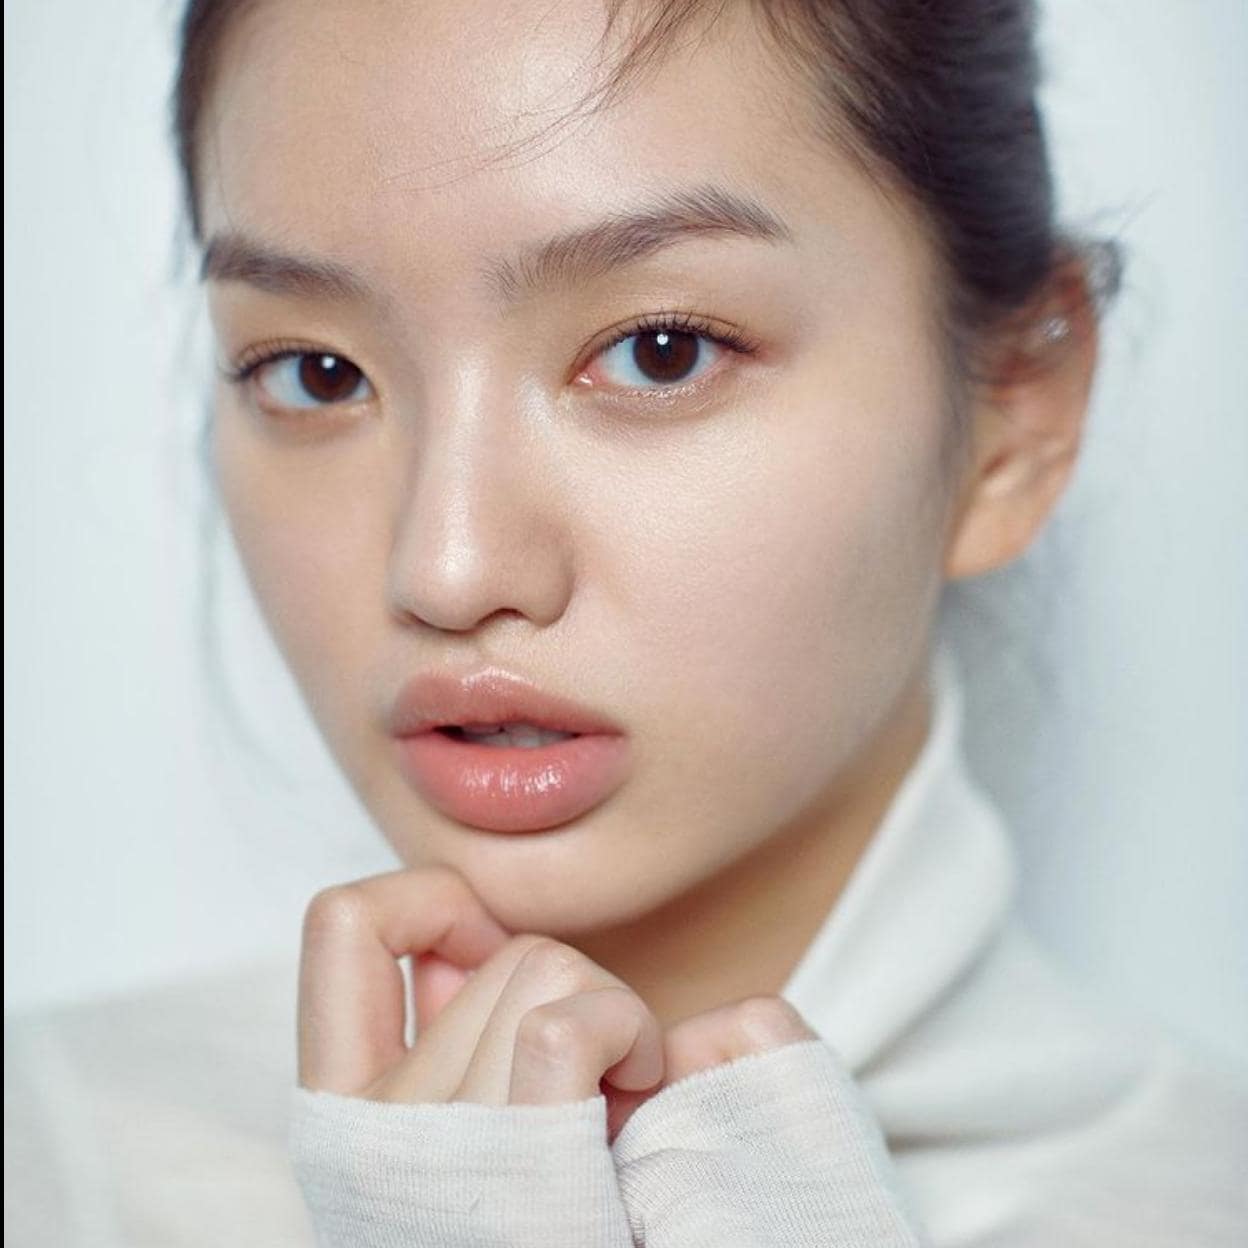 Pincha en la imagen para conocer los mejores cosméticos coreanos para acabar con el acné y conseguir una piel ultra lisa. /instagram @colajaime